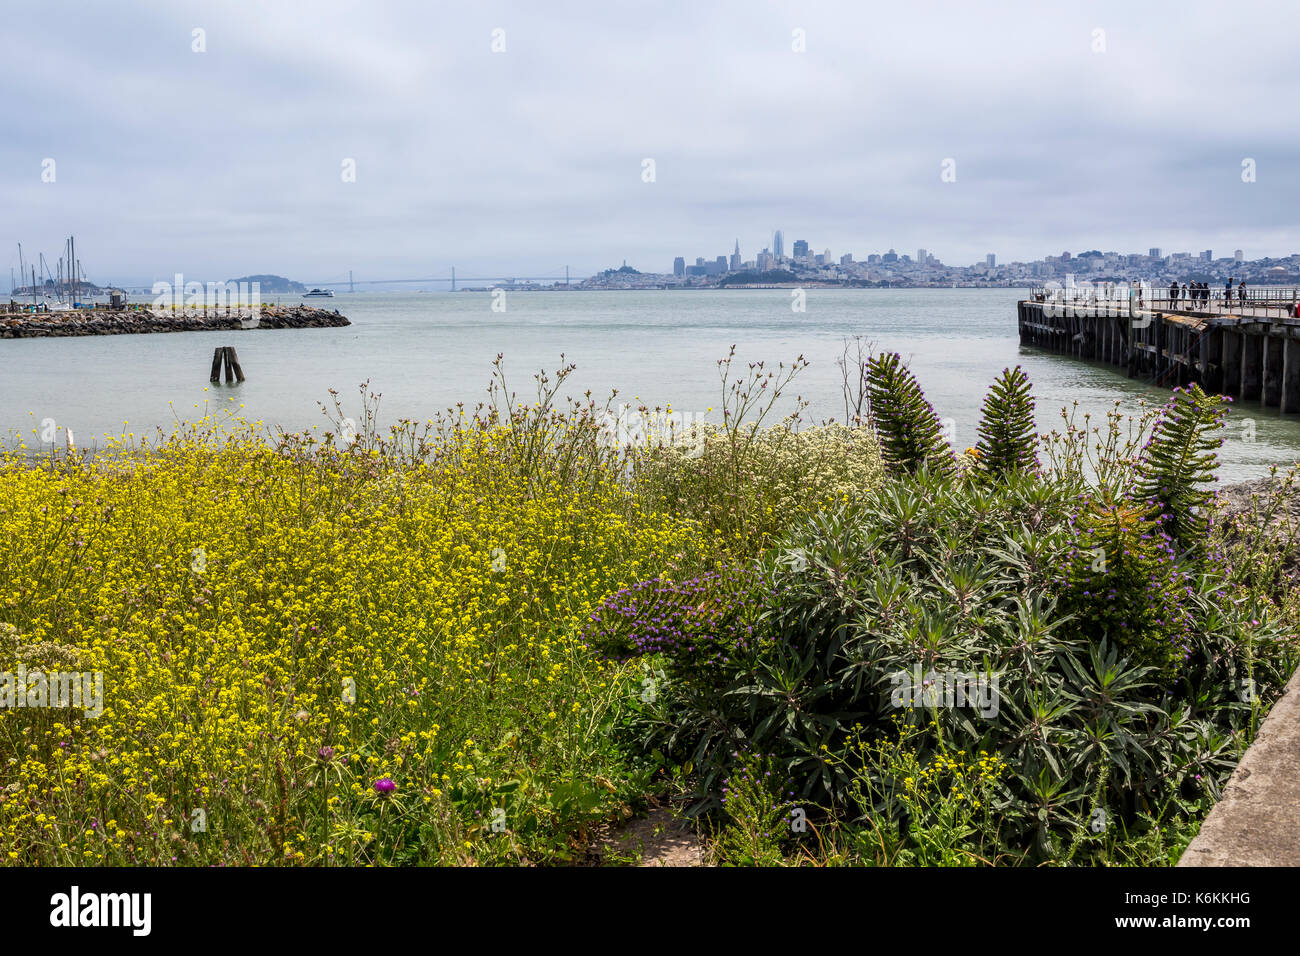 La flore, la végétation, personnes, vue en direction de San Francisco à partir de fort baker, fort Baker, de la ville de Sausalito, comté de marin, en Californie, États-Unis Banque D'Images